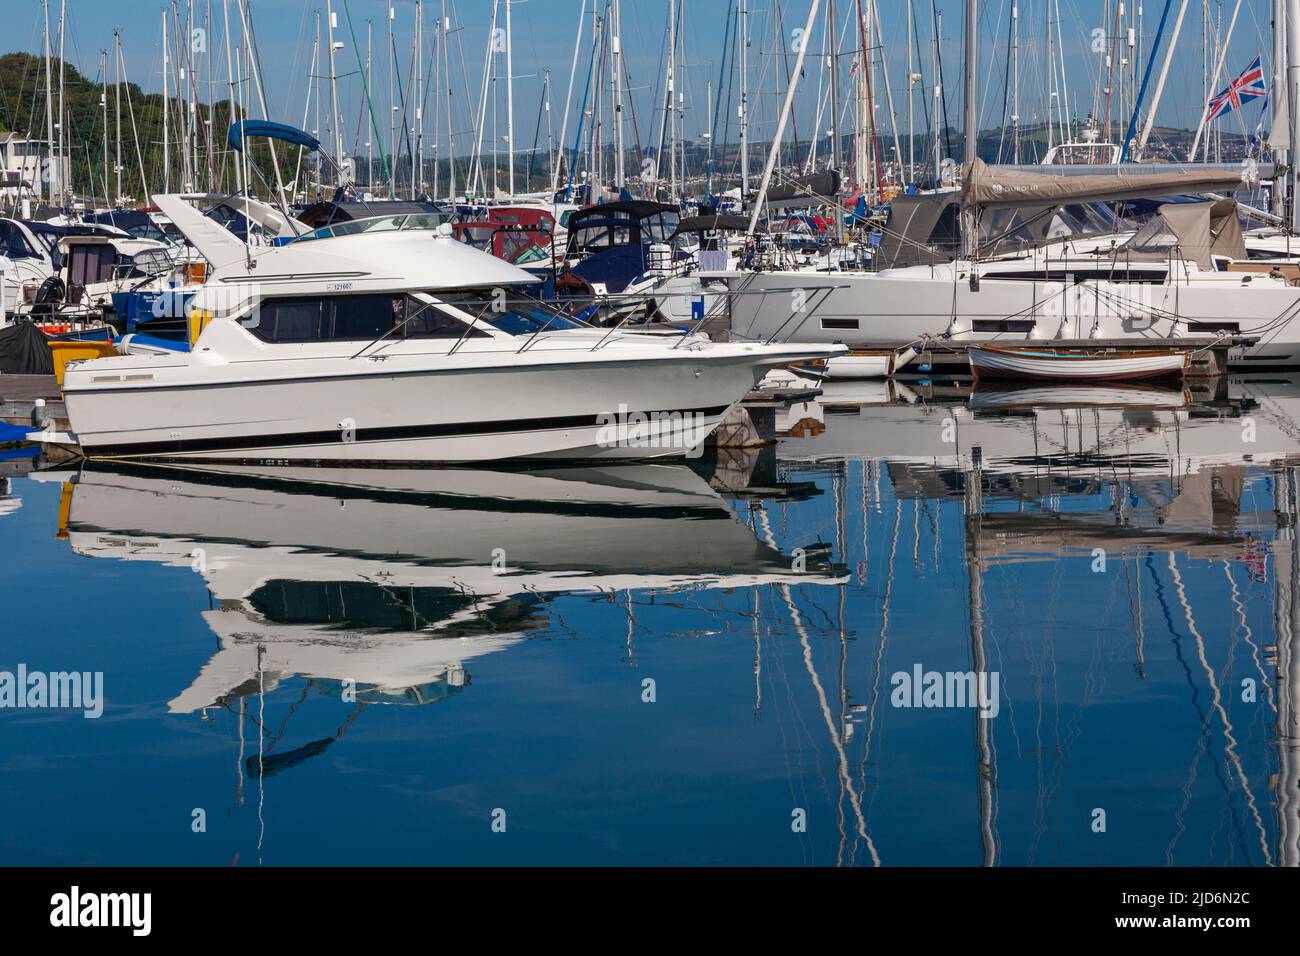 Brixham Harbor & Marina, Devon, Inglaterra, Reino Unido – barcos anclados y atados que proyectan reflejos en un mar similar al espejo Foto de stock